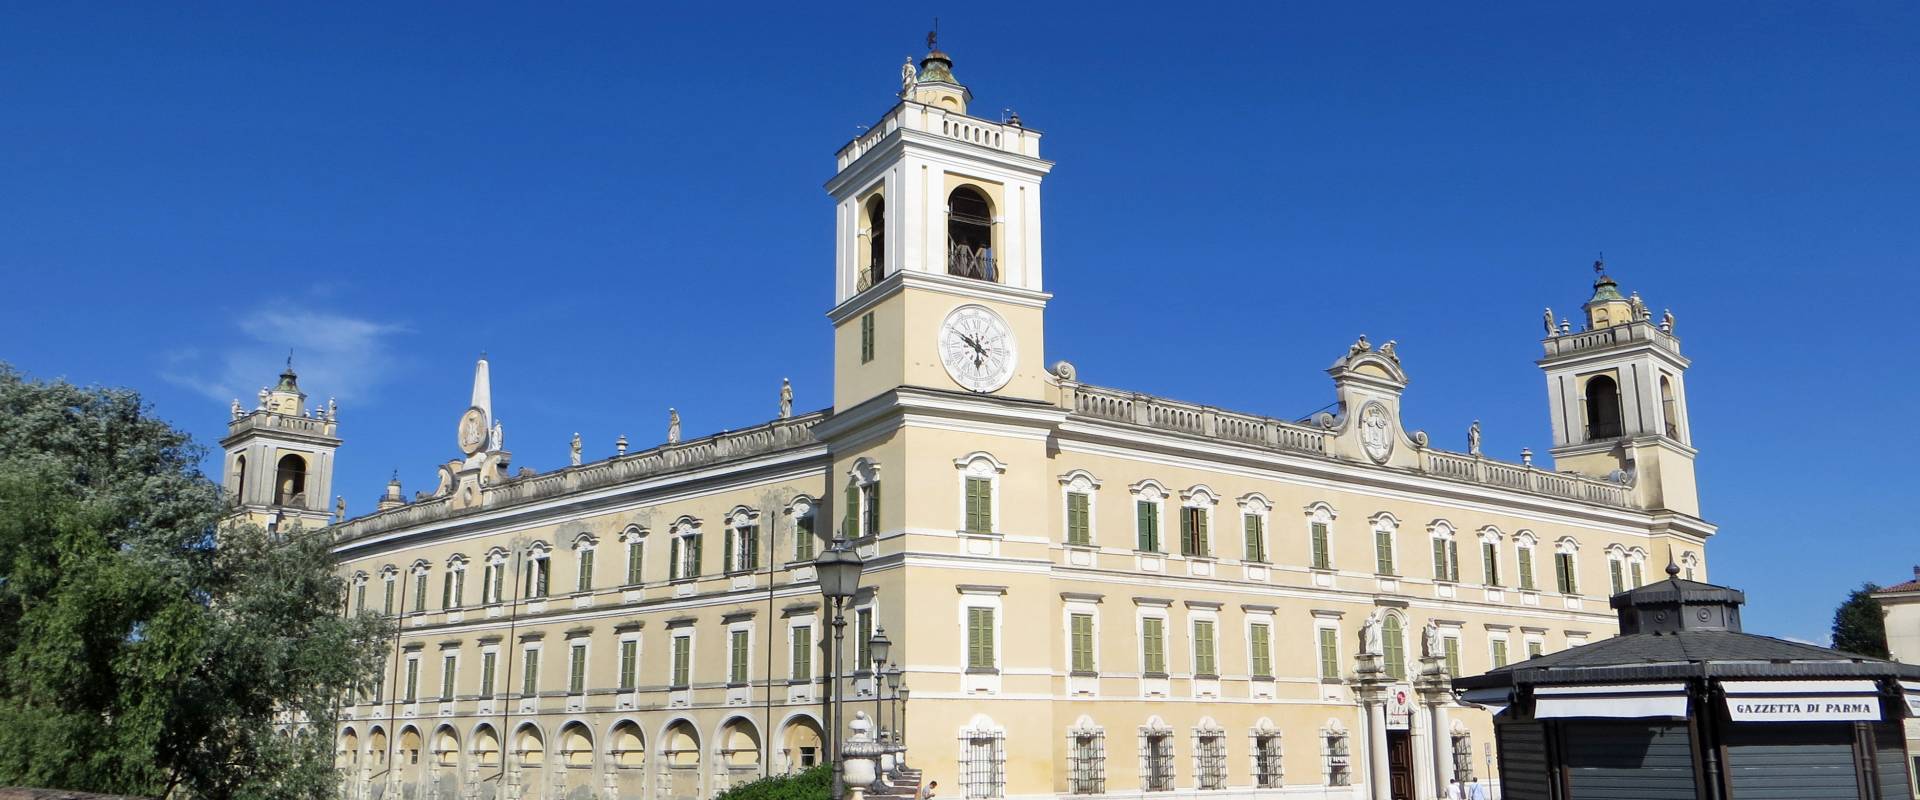 Palazzo Ducale (Colorno) - facciata e lato nord-ovest 1 2019-06-20 foto di Parma198